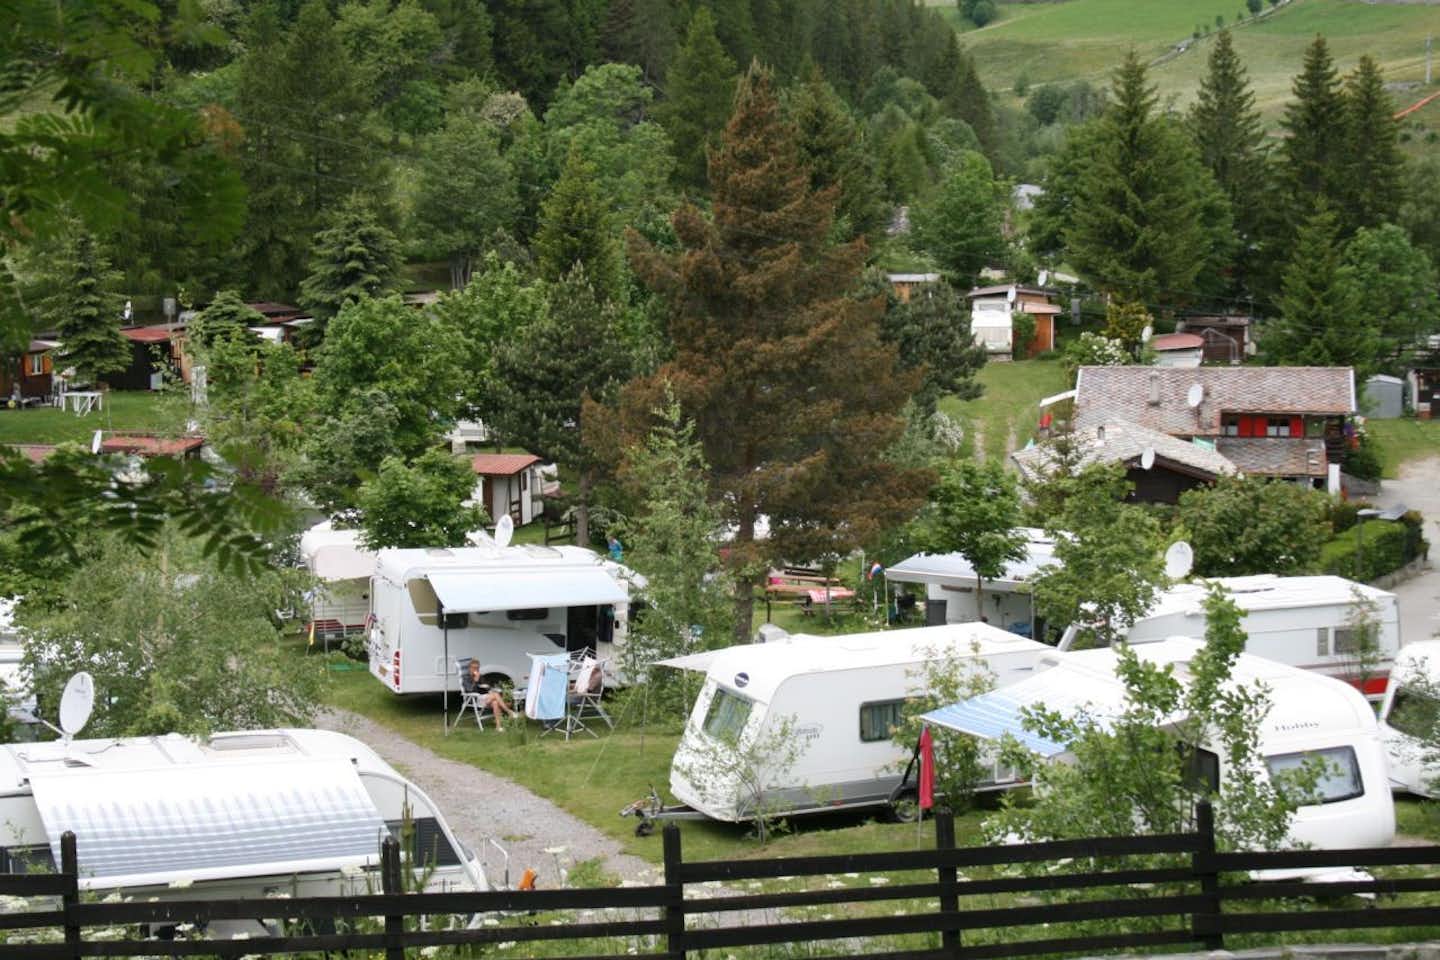 Camping Tunnel  -  Blick auf den Wohnwagenstellplatz und Wohnmobilstellplatz vom Campingplatz zwischen Bäumen